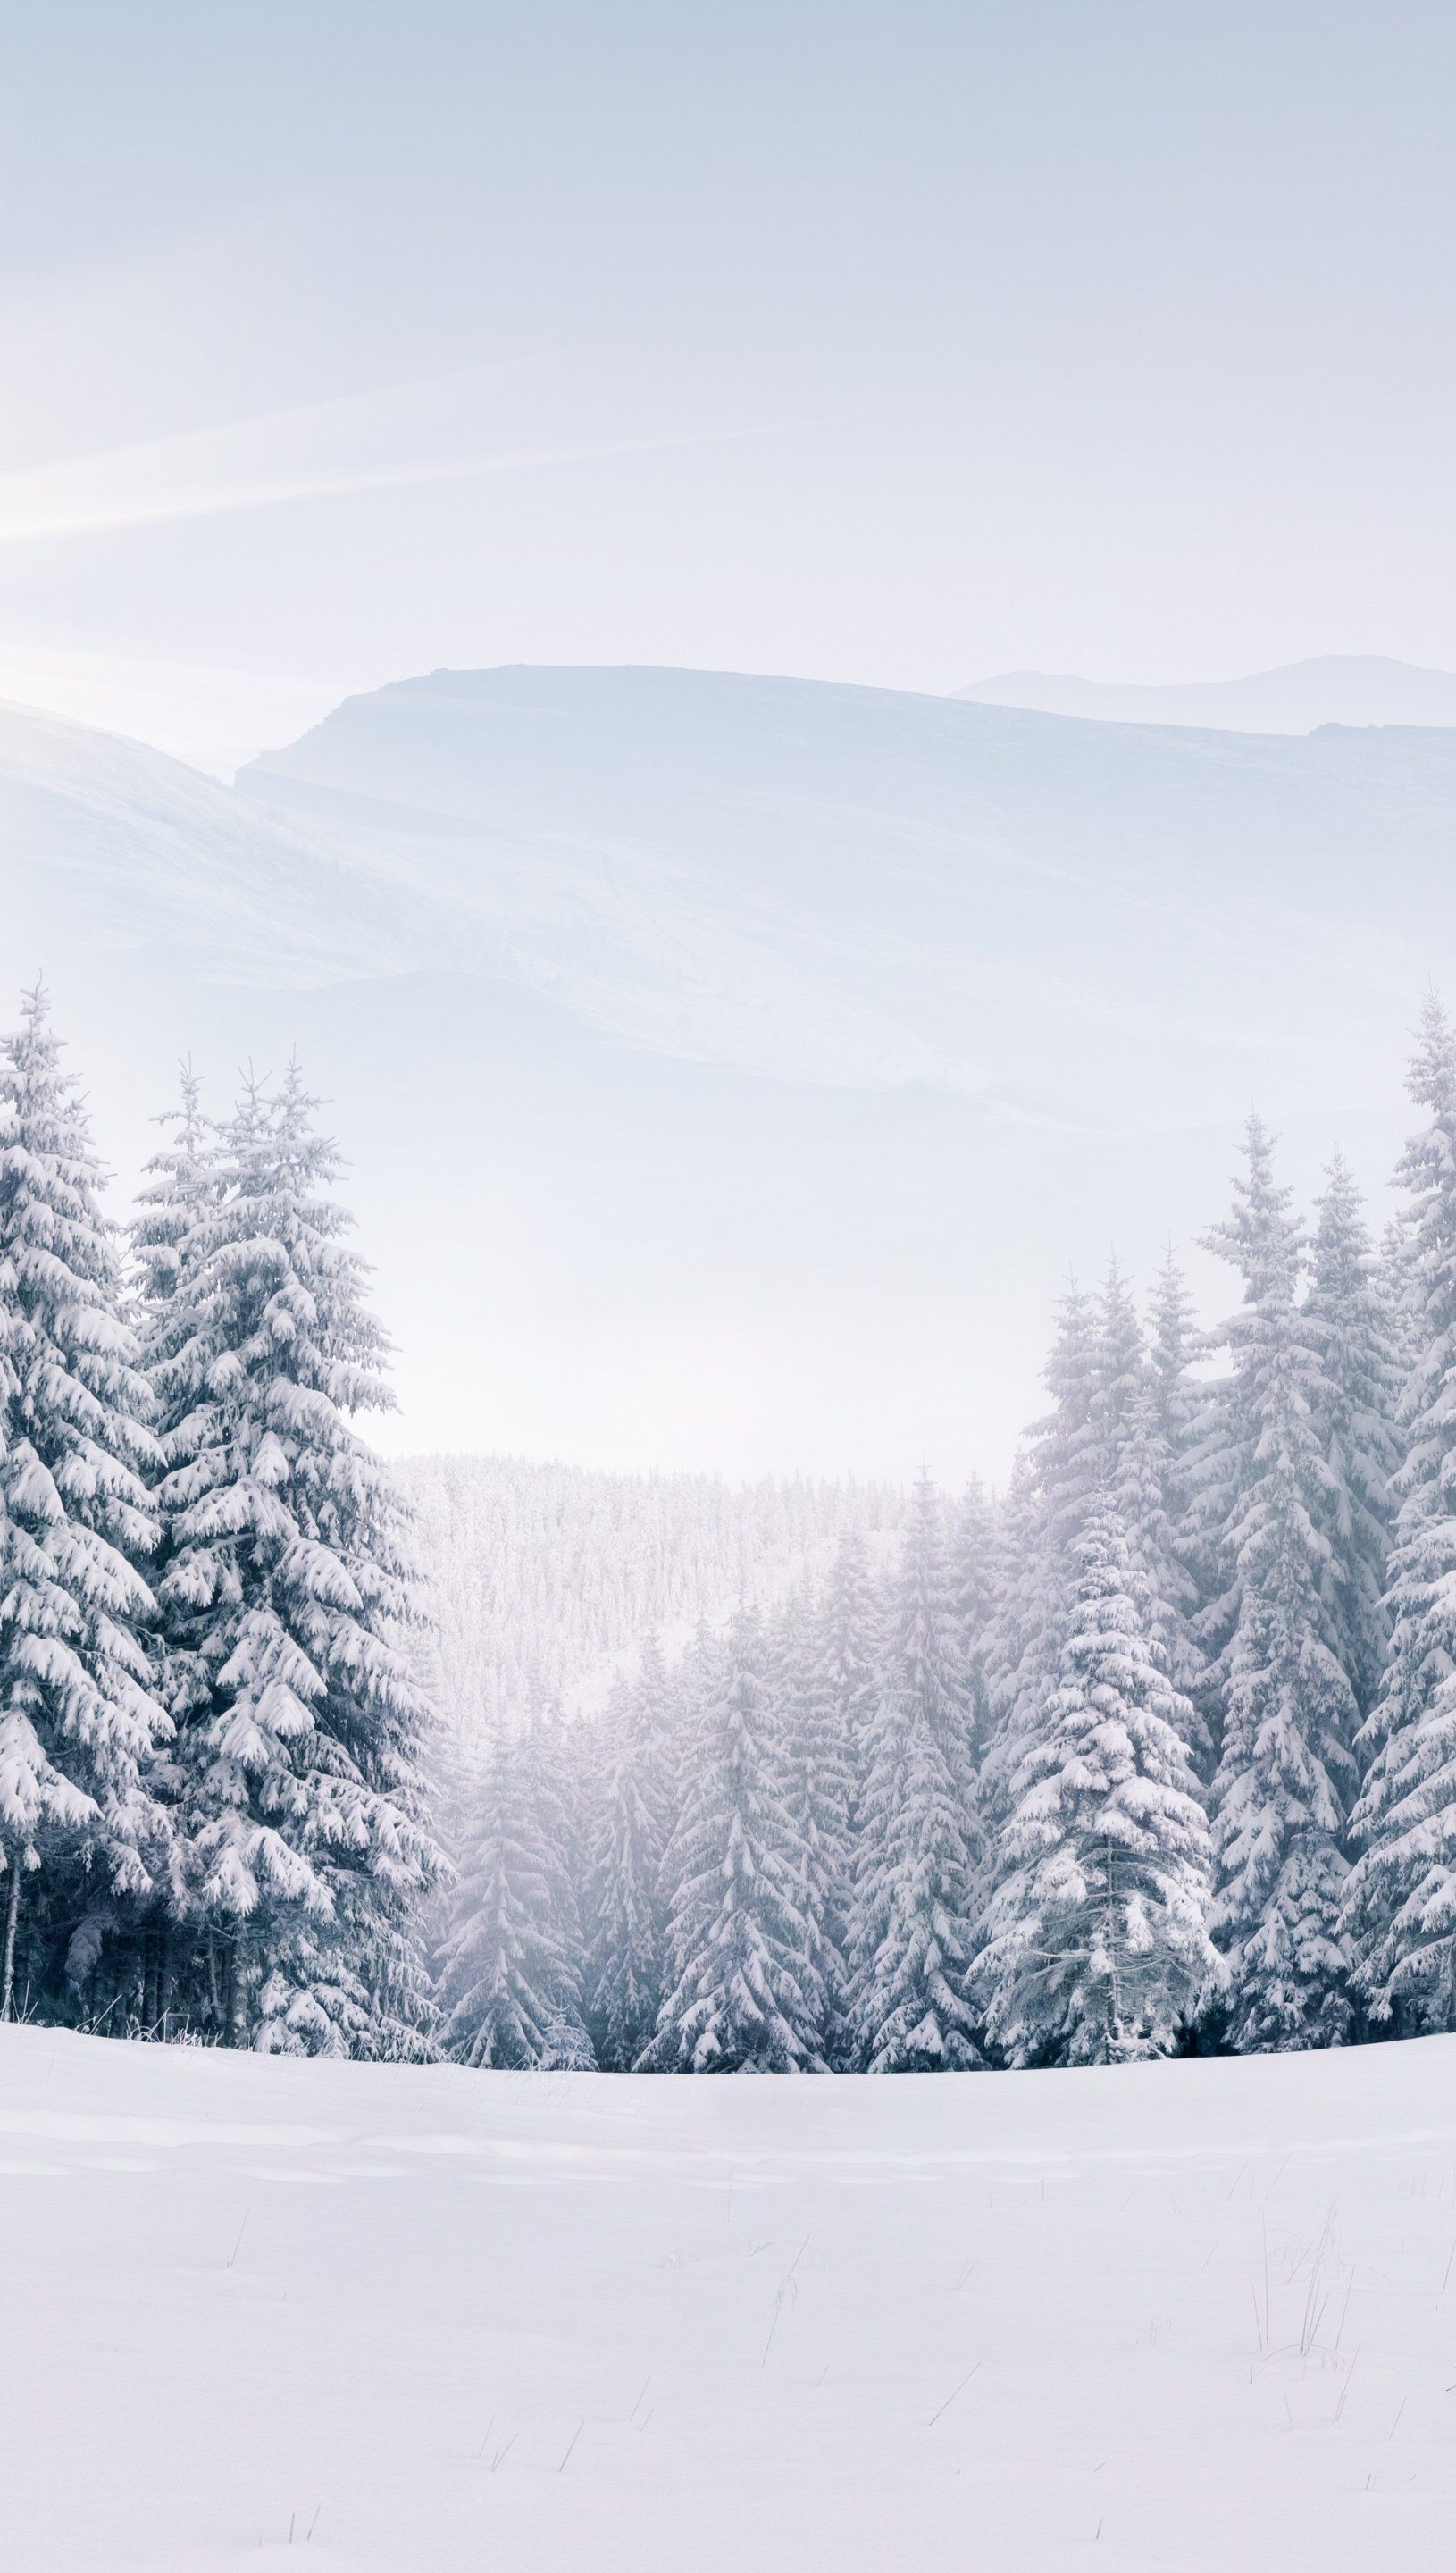 Pine trees in snowy forest in winter Wallpaper 5k Ultra HD